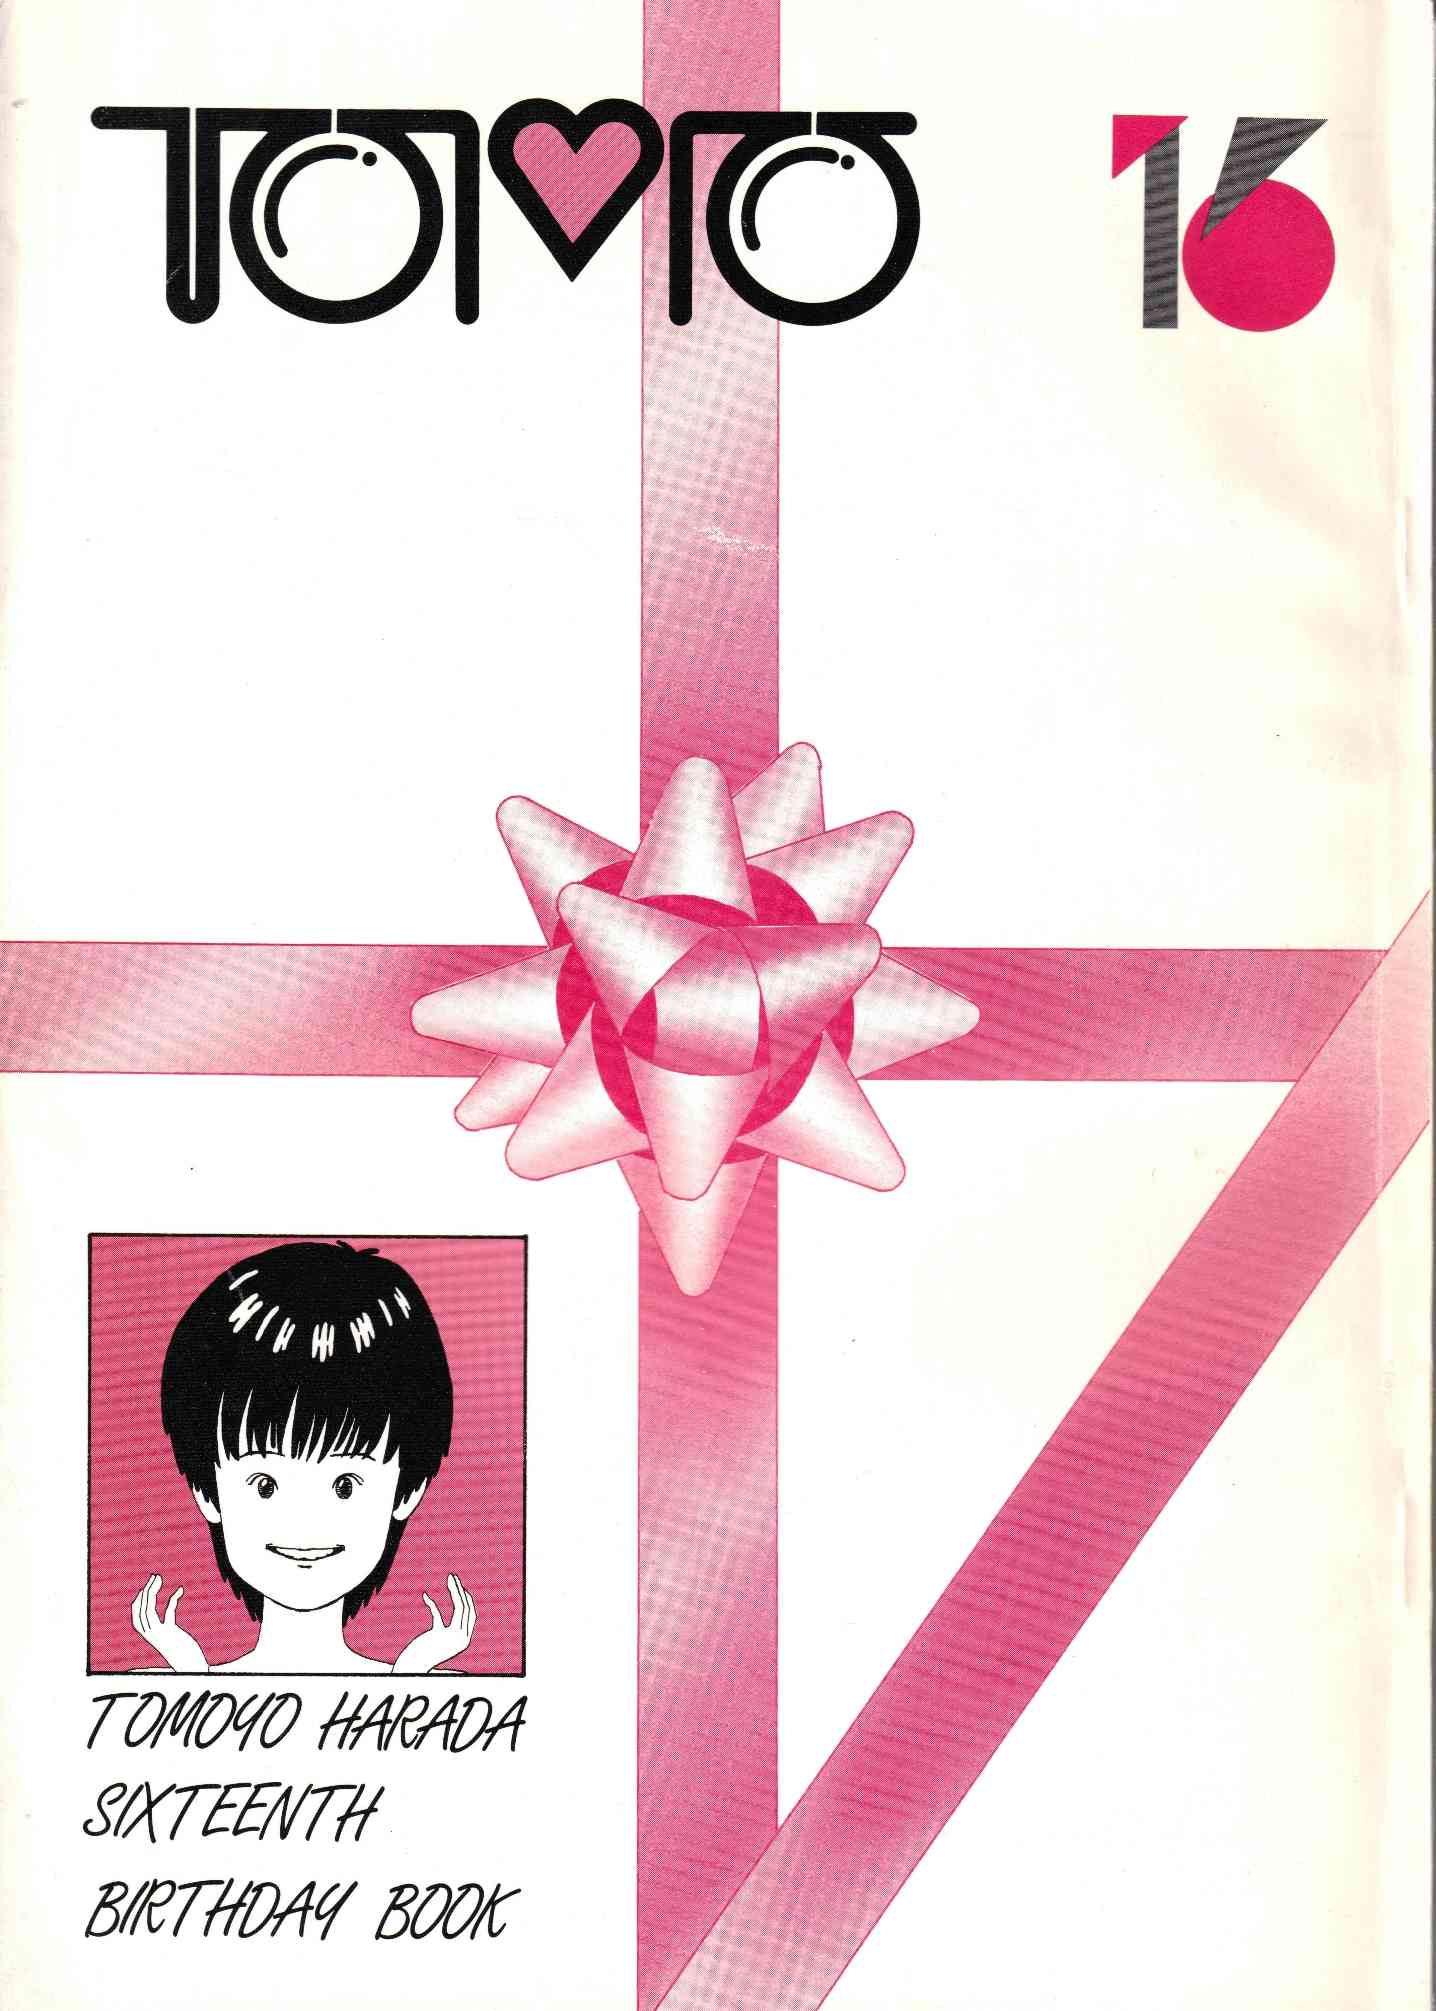 一般には販売されなかった幻の同人誌「TOMO16」（発行を知世さん16歳の誕生日に合わせたので）